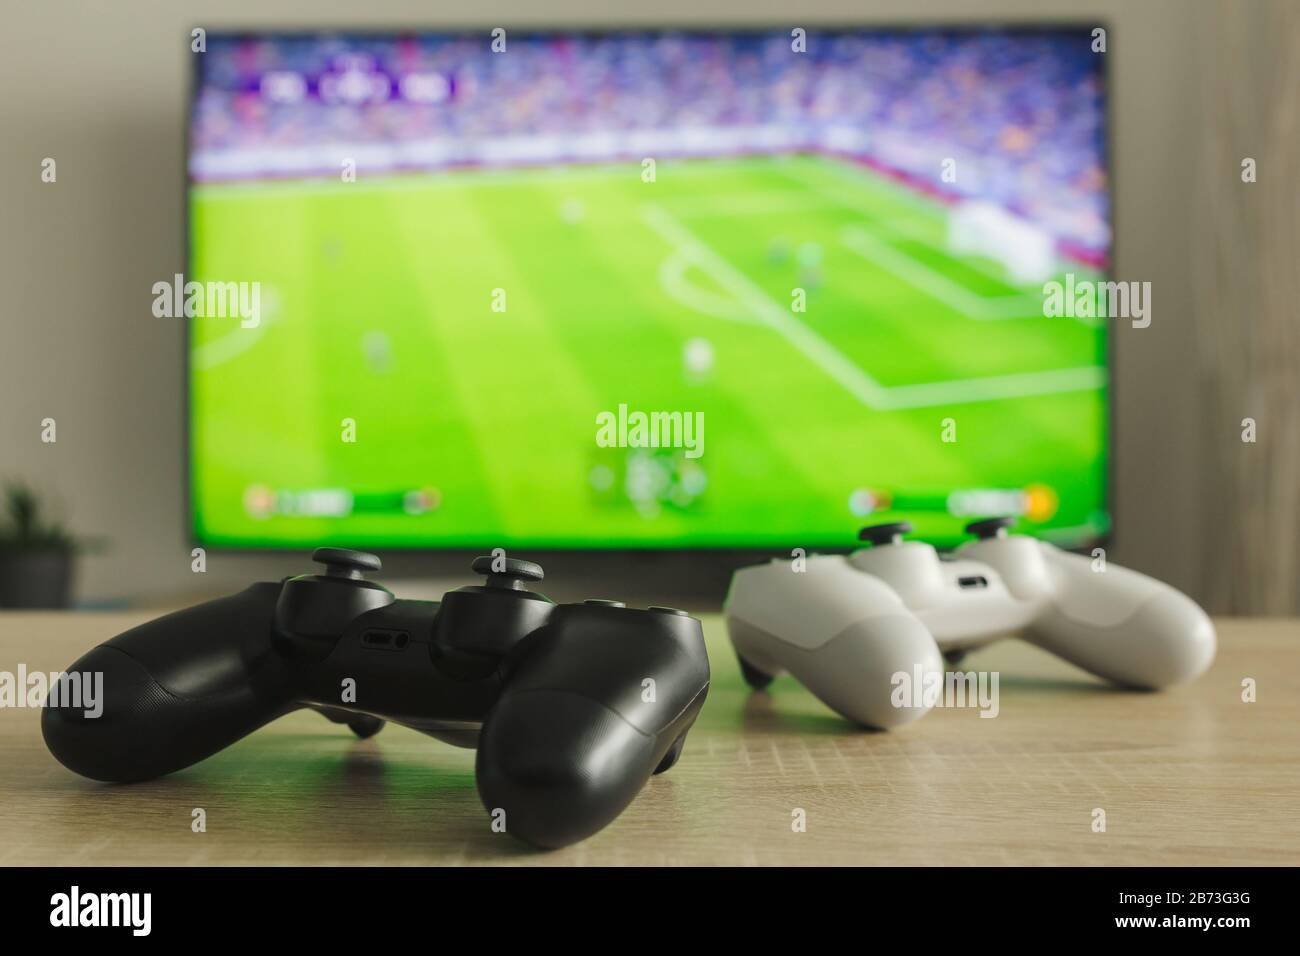 Stock-Foto von zwei Gamepads auf einem Tisch und einem Fußballspiel im Fernsehen im Hintergrund Stockfoto